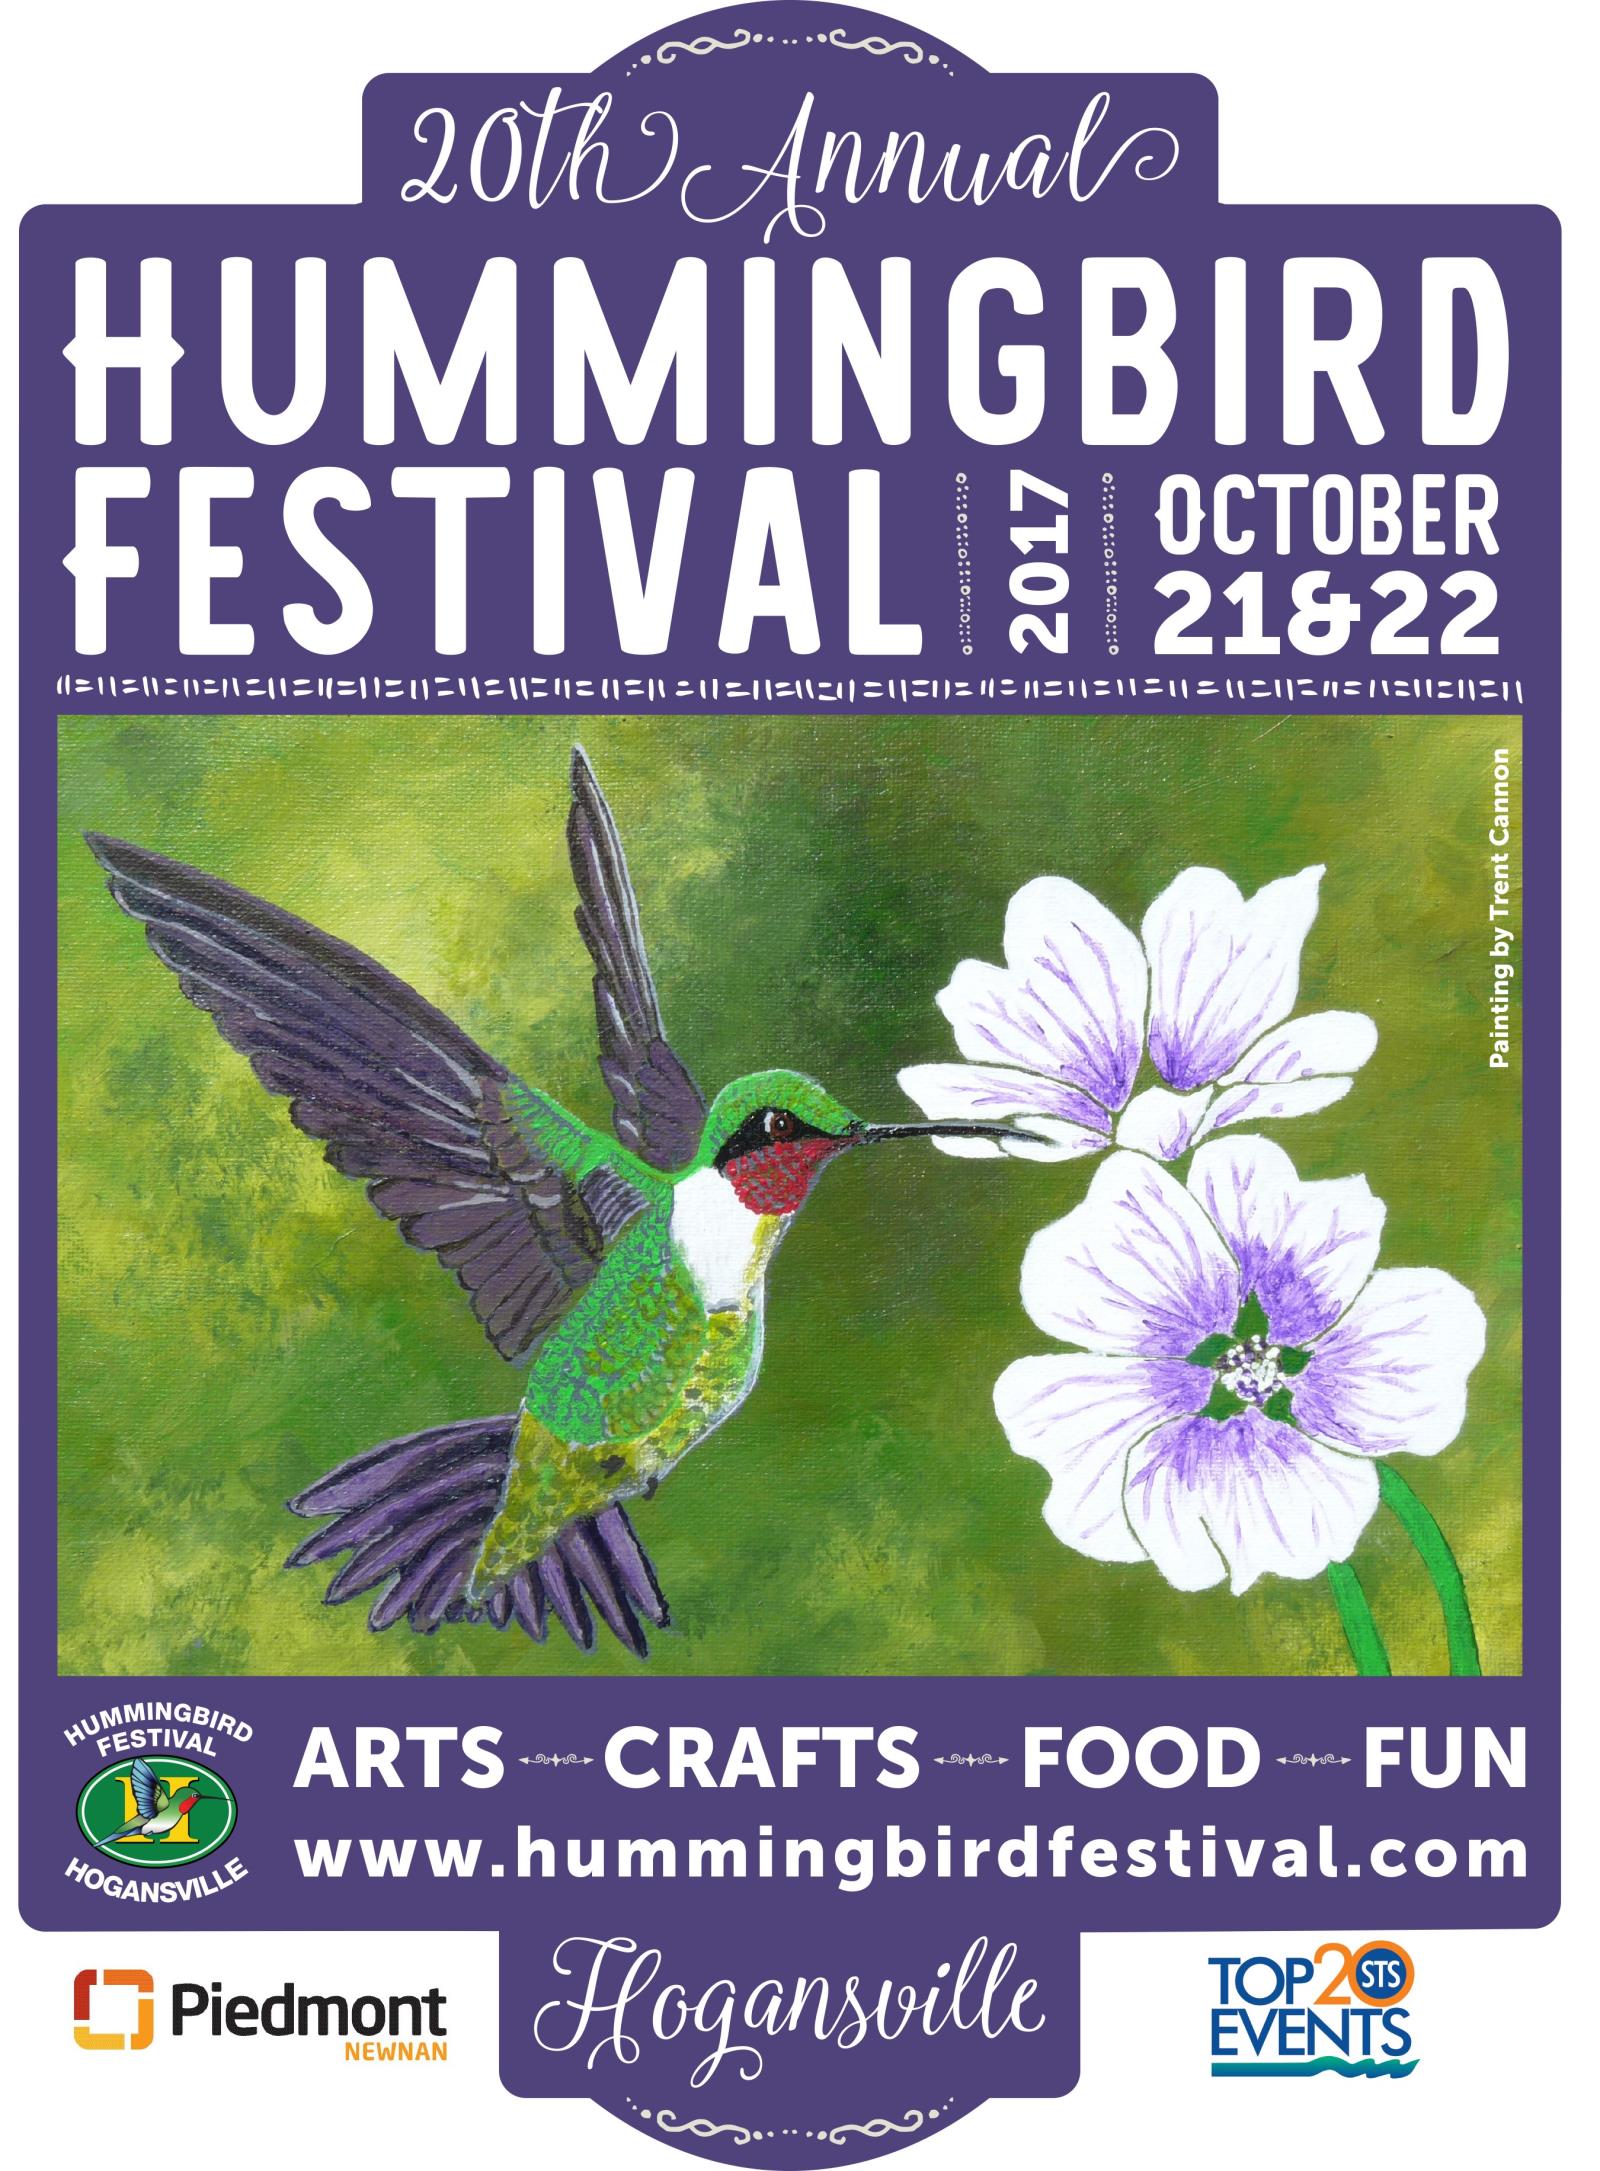 2017 Hummingbird Festival Poster